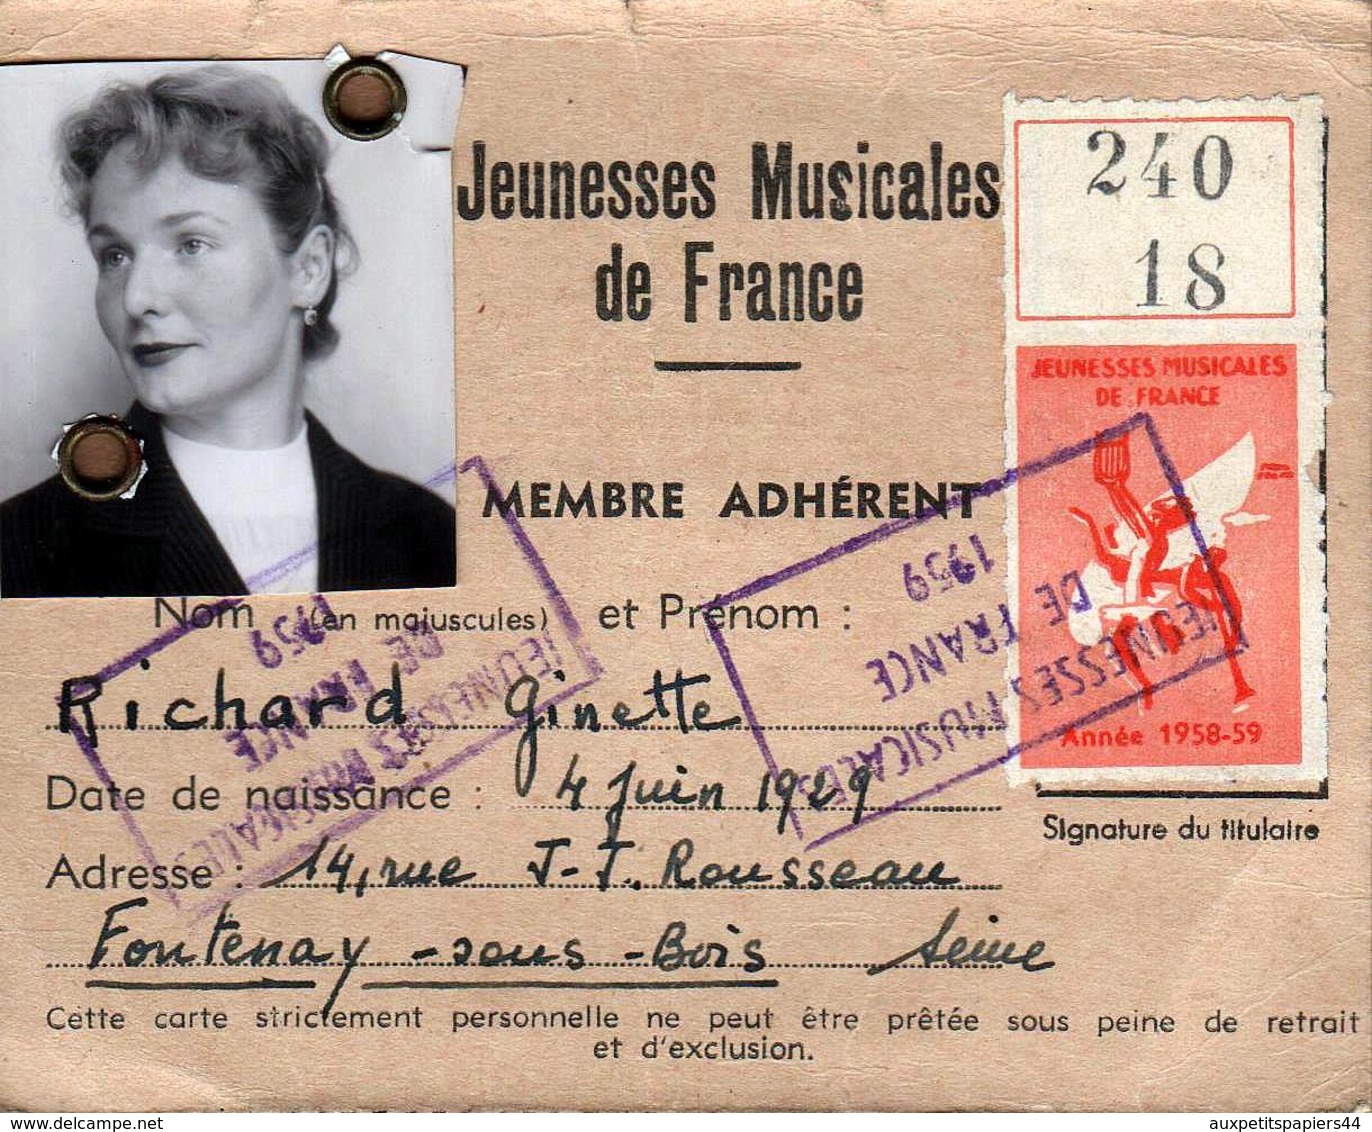 Carte Des Jeunesses Musicales De France - Membre Adhérent Richard Ginette, Fontenay Sous Bois, Vignette 1958/59 - Documents Historiques